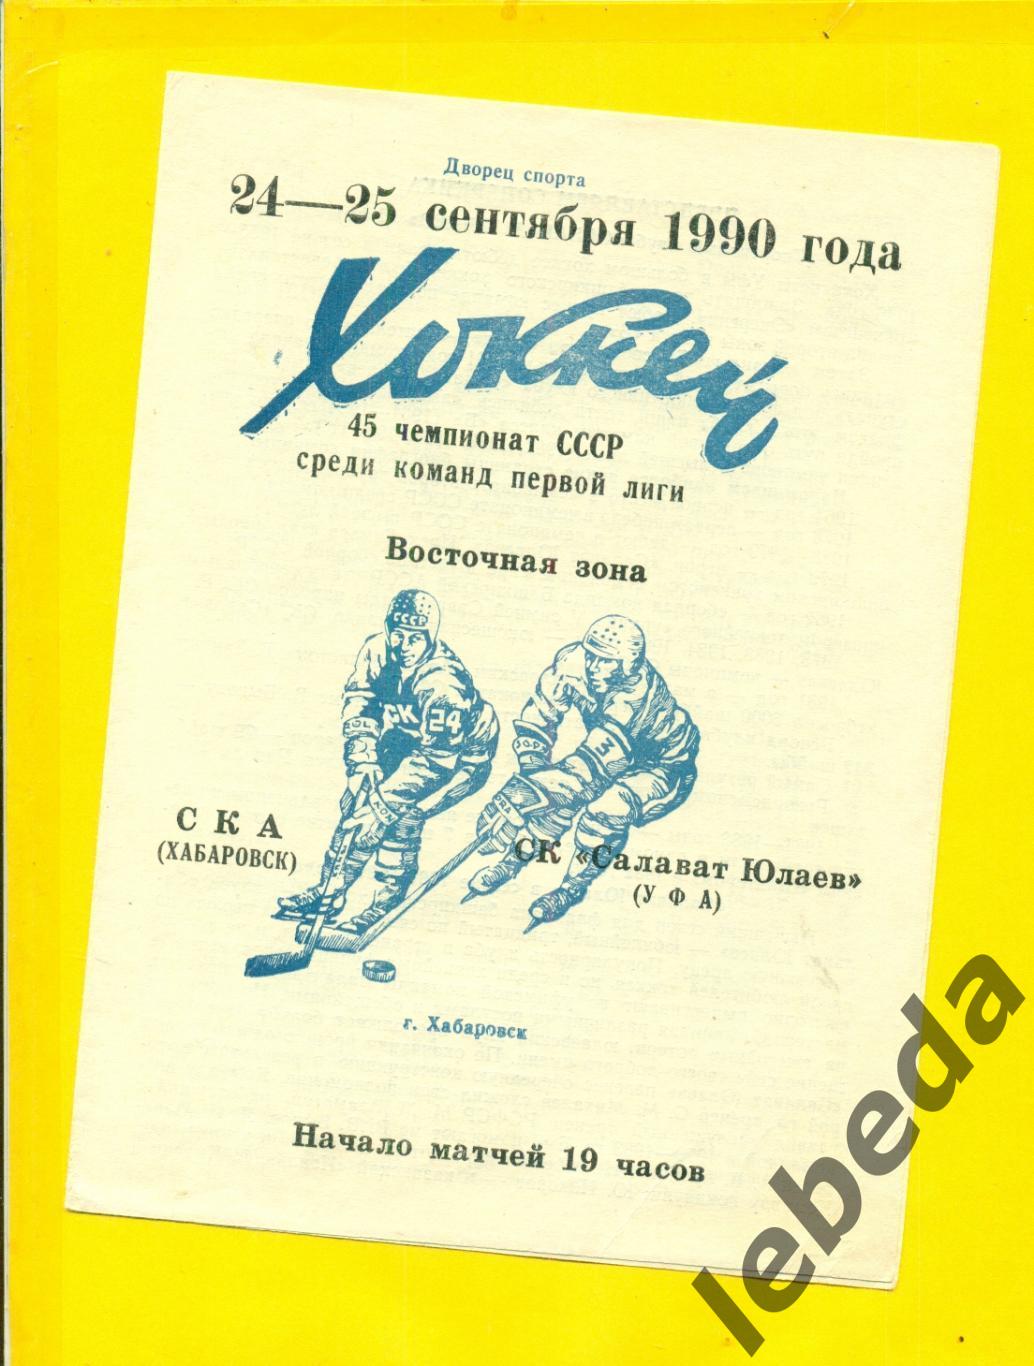 СКА Хабаровск - Салават Юлаев Уфа - 1990 / 1991 г. (24-25.09.90.)